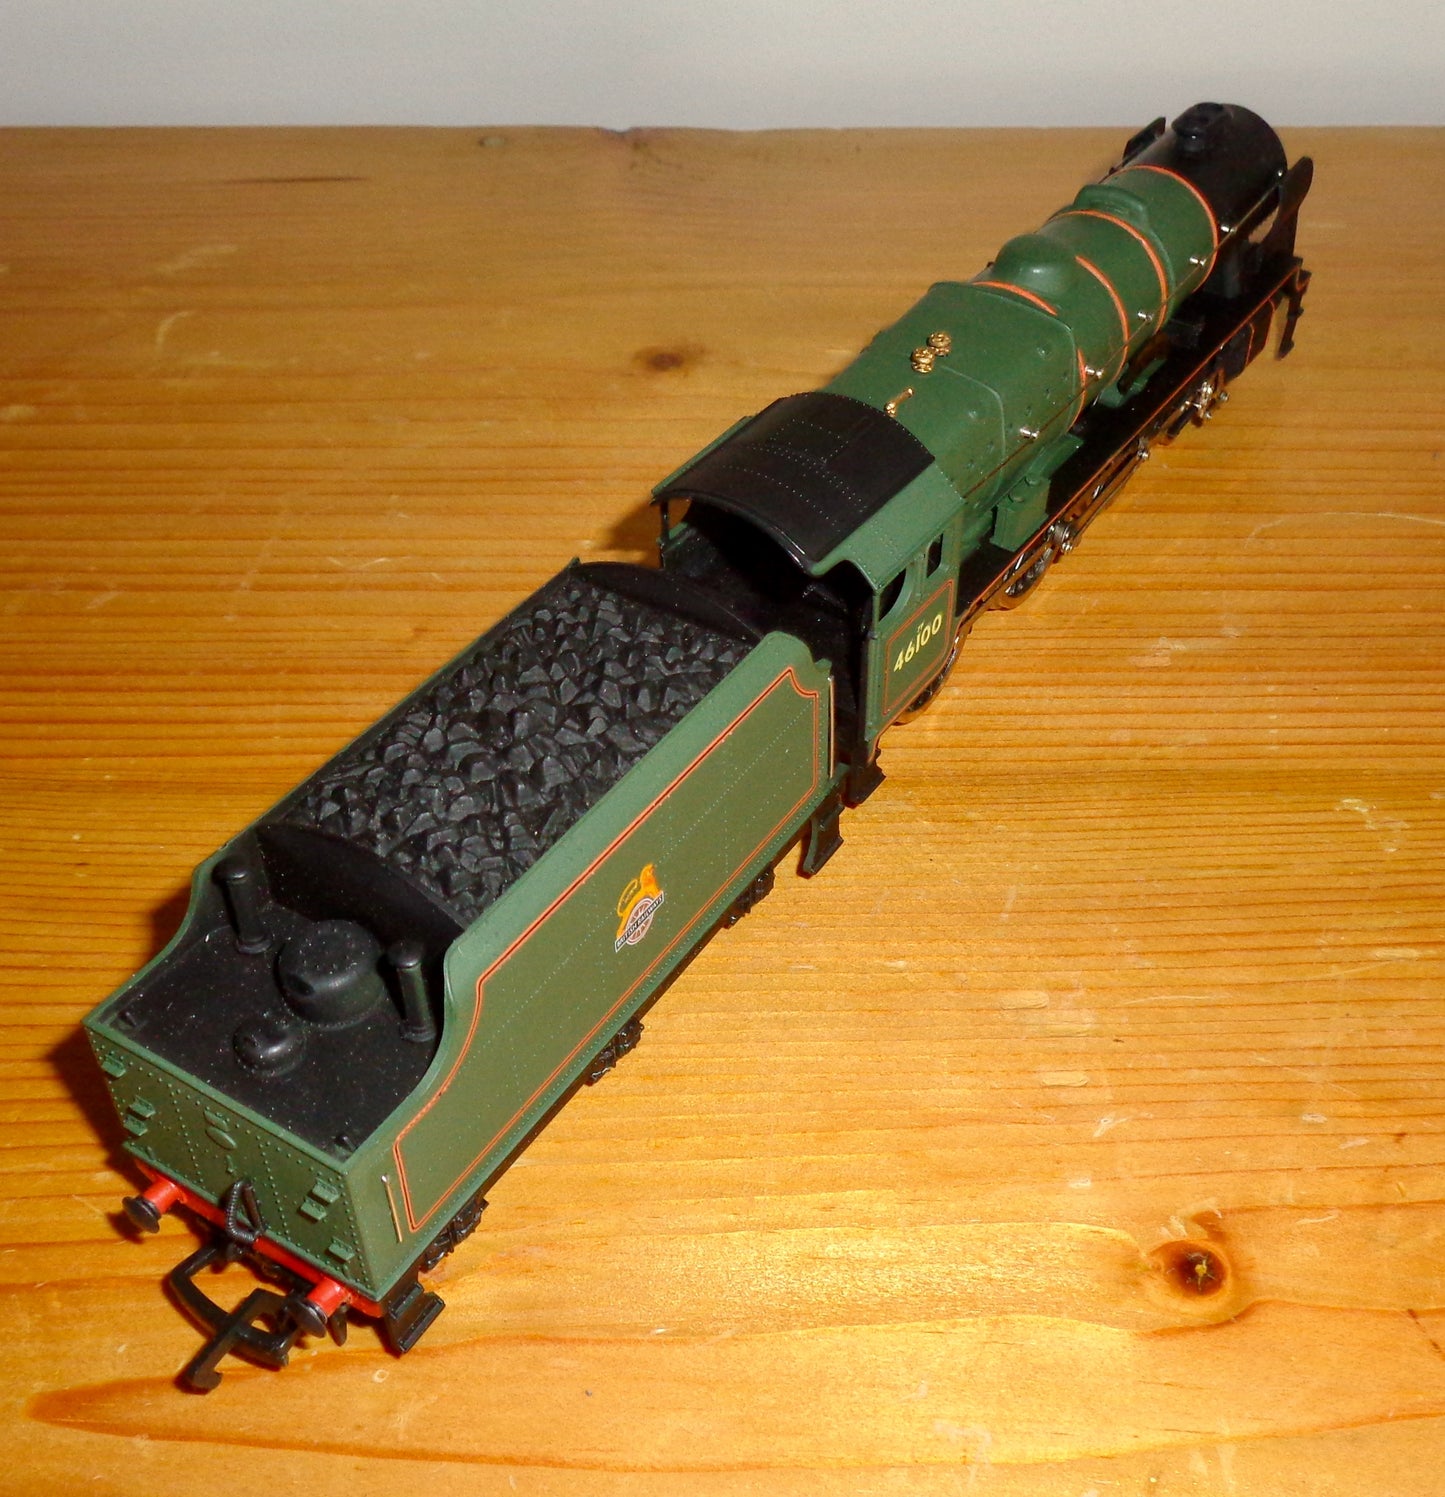 OO Gauge Mainline BR 46100 Royal Scot Steam Locomotive Engine And Tender in Original Box